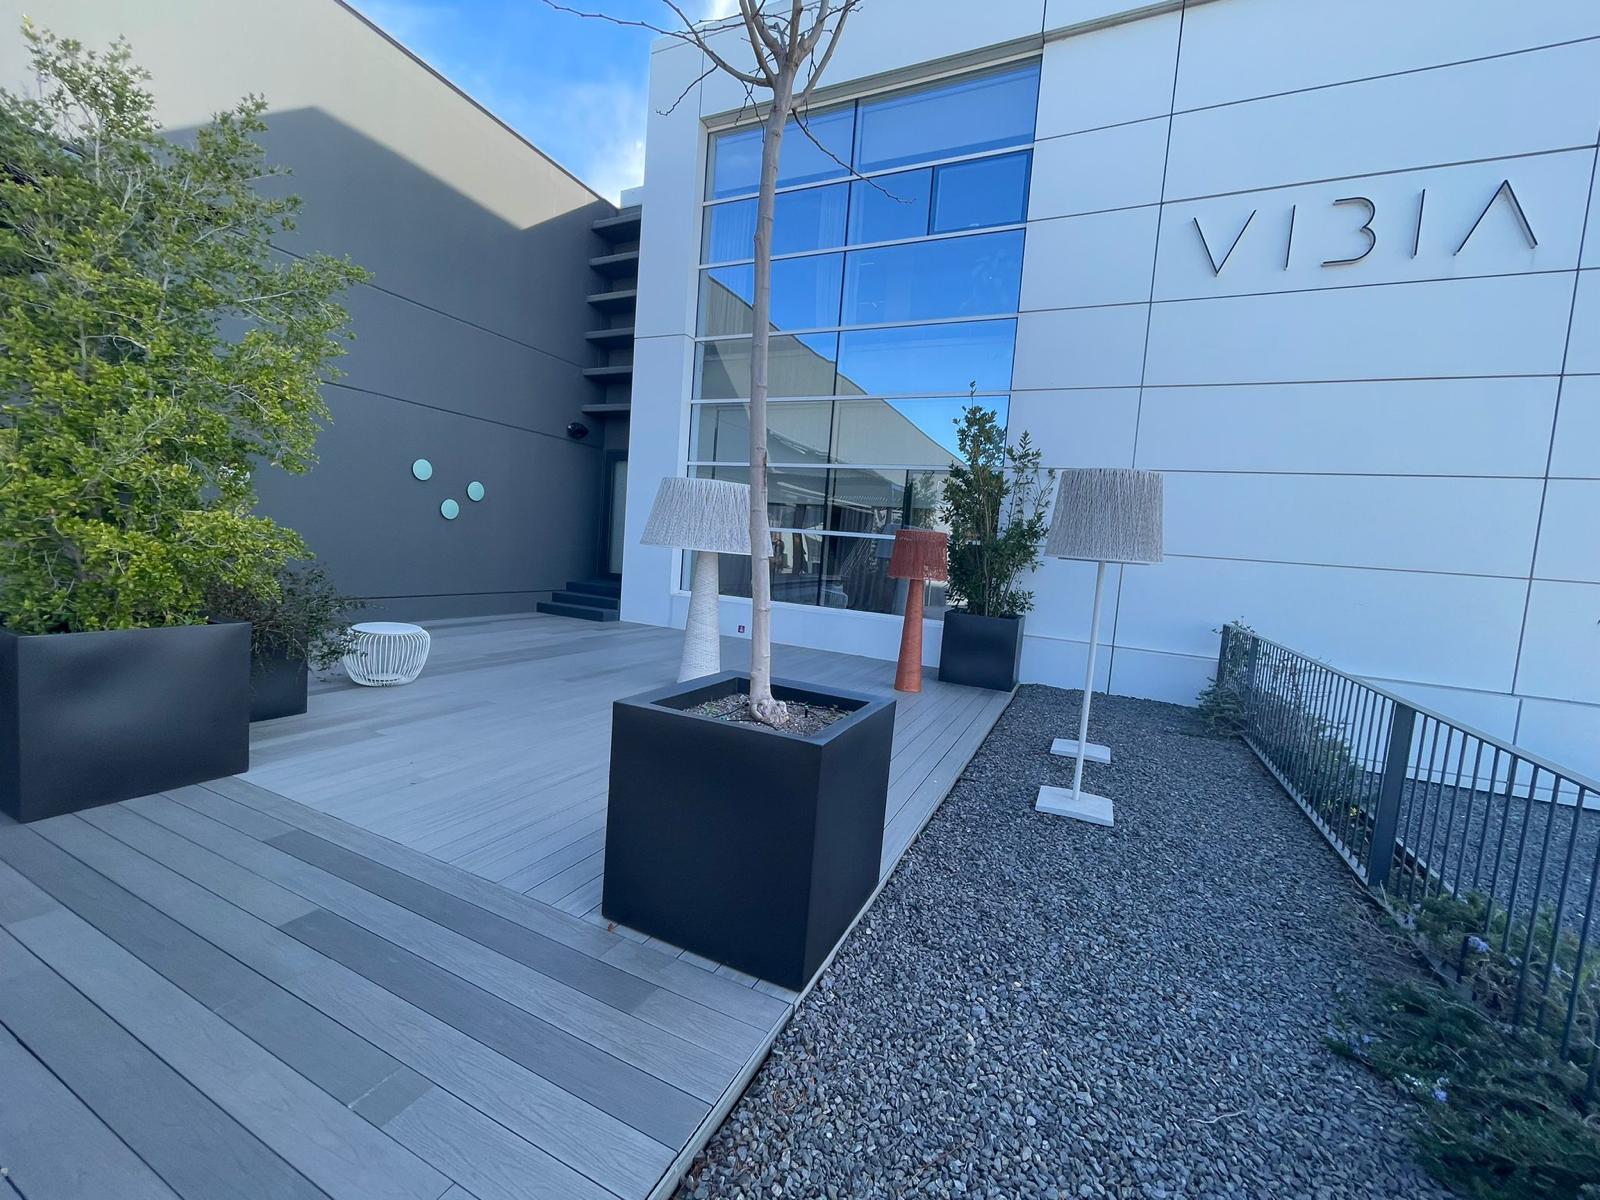 Gran jornada el pasado martes visitando el showroom de VIBIA en su fábrica de Gavà, con nuestros clientes MMLV (Louis Vuitton), para sus nuevas oficinas en LCB3.